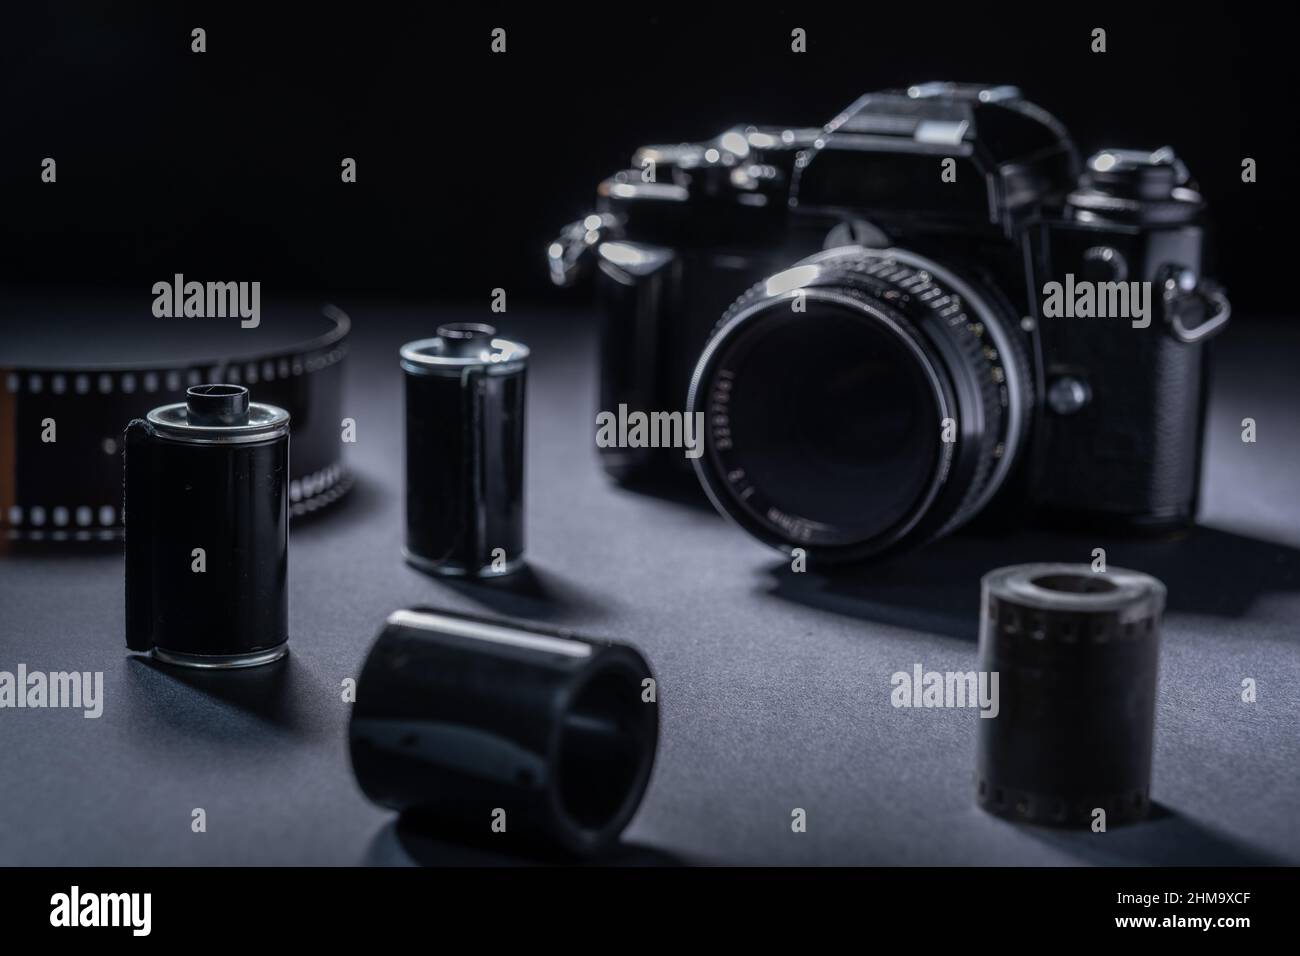 Fotografía de películas: Un cartucho de película metálica vintage y una cámara SLR 35mm sobre un fondo oscuro. Foto de stock